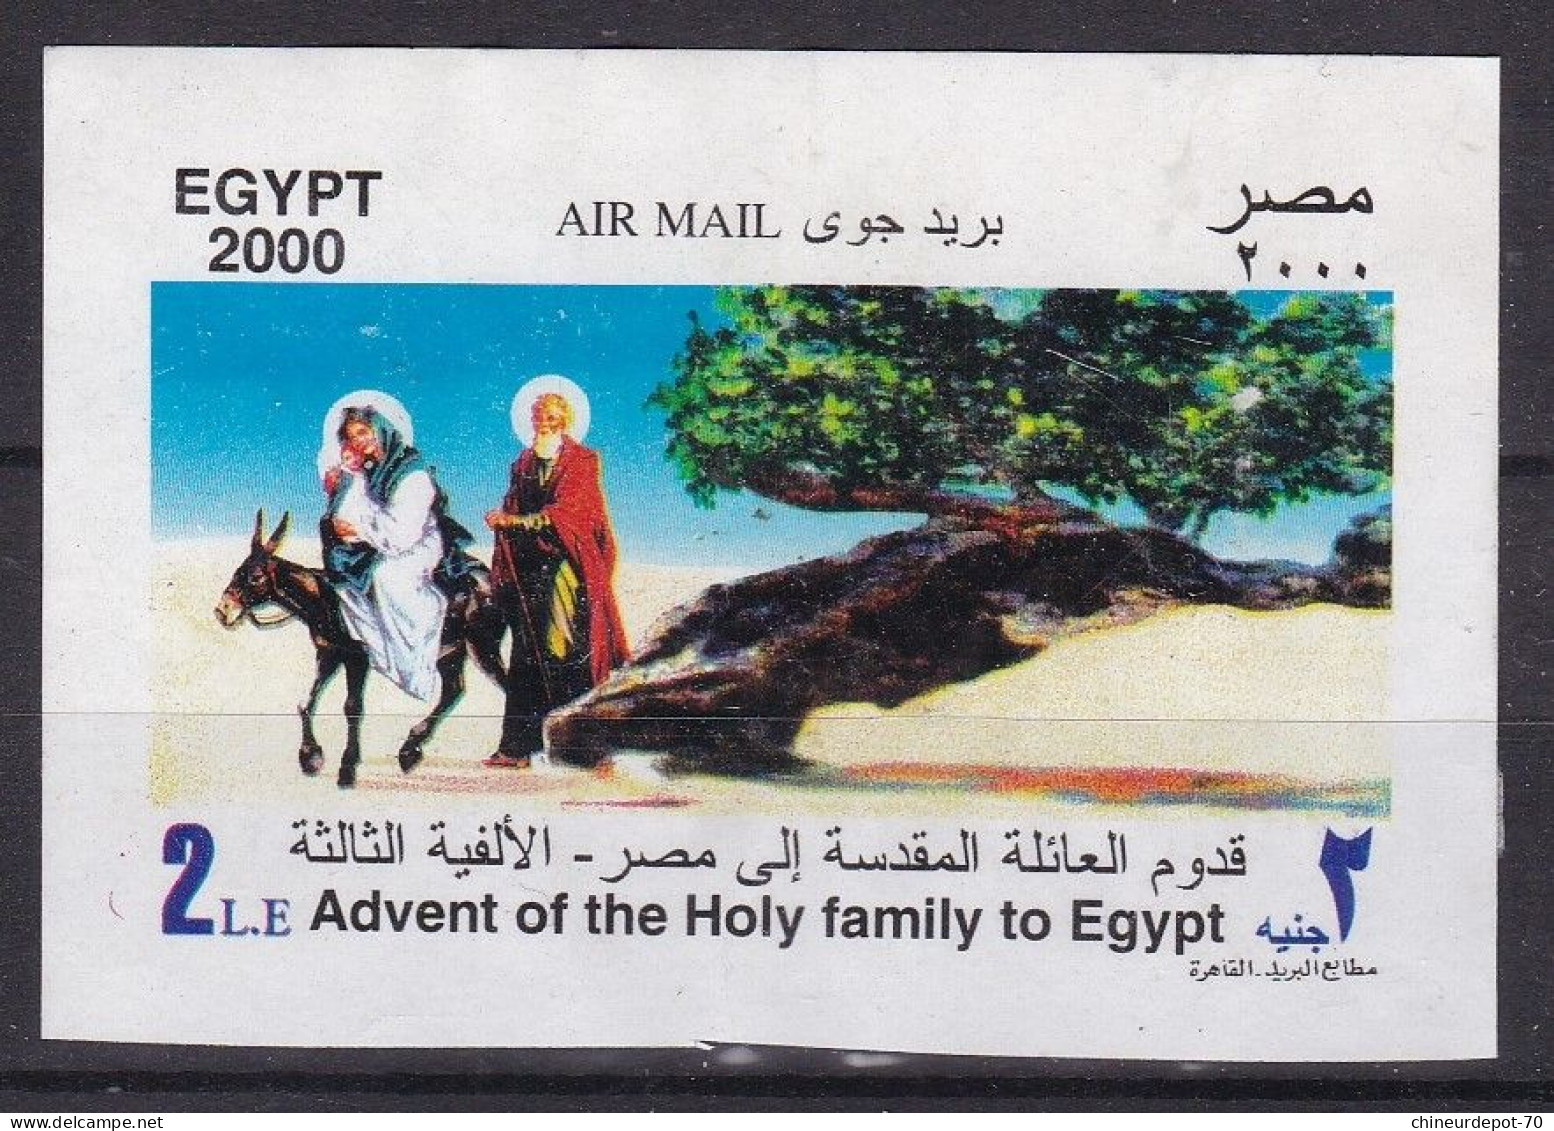 ÉGYPTE 2000 COURRIER AÉRIEN L'Avènement De La Sainte Famille En Egypte  Le Caire - Usati